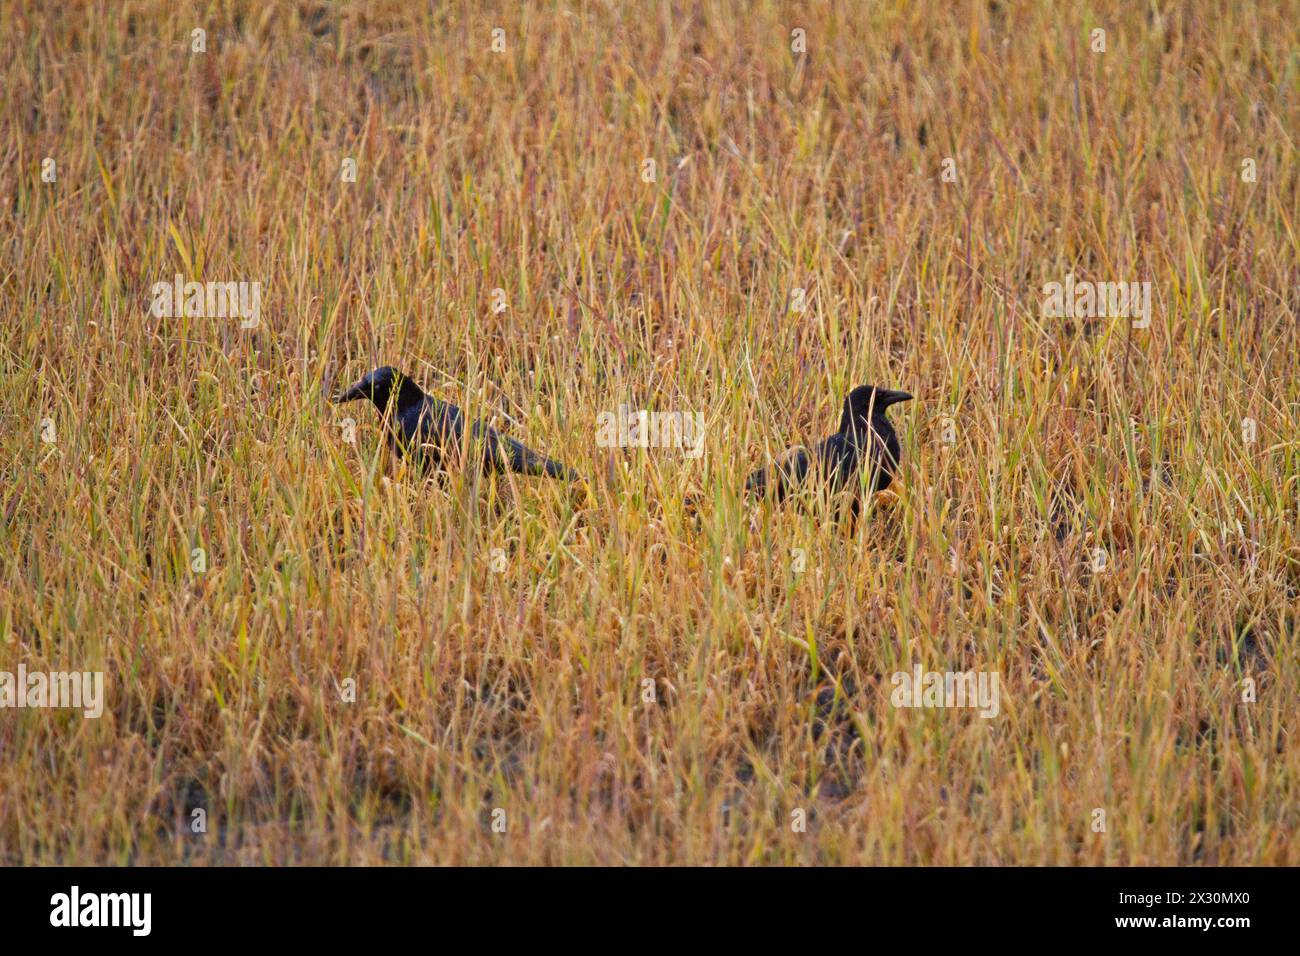 Zwei Carrion-Krähen auf einem Feld, mit Glyphosat behandelt Stockfoto